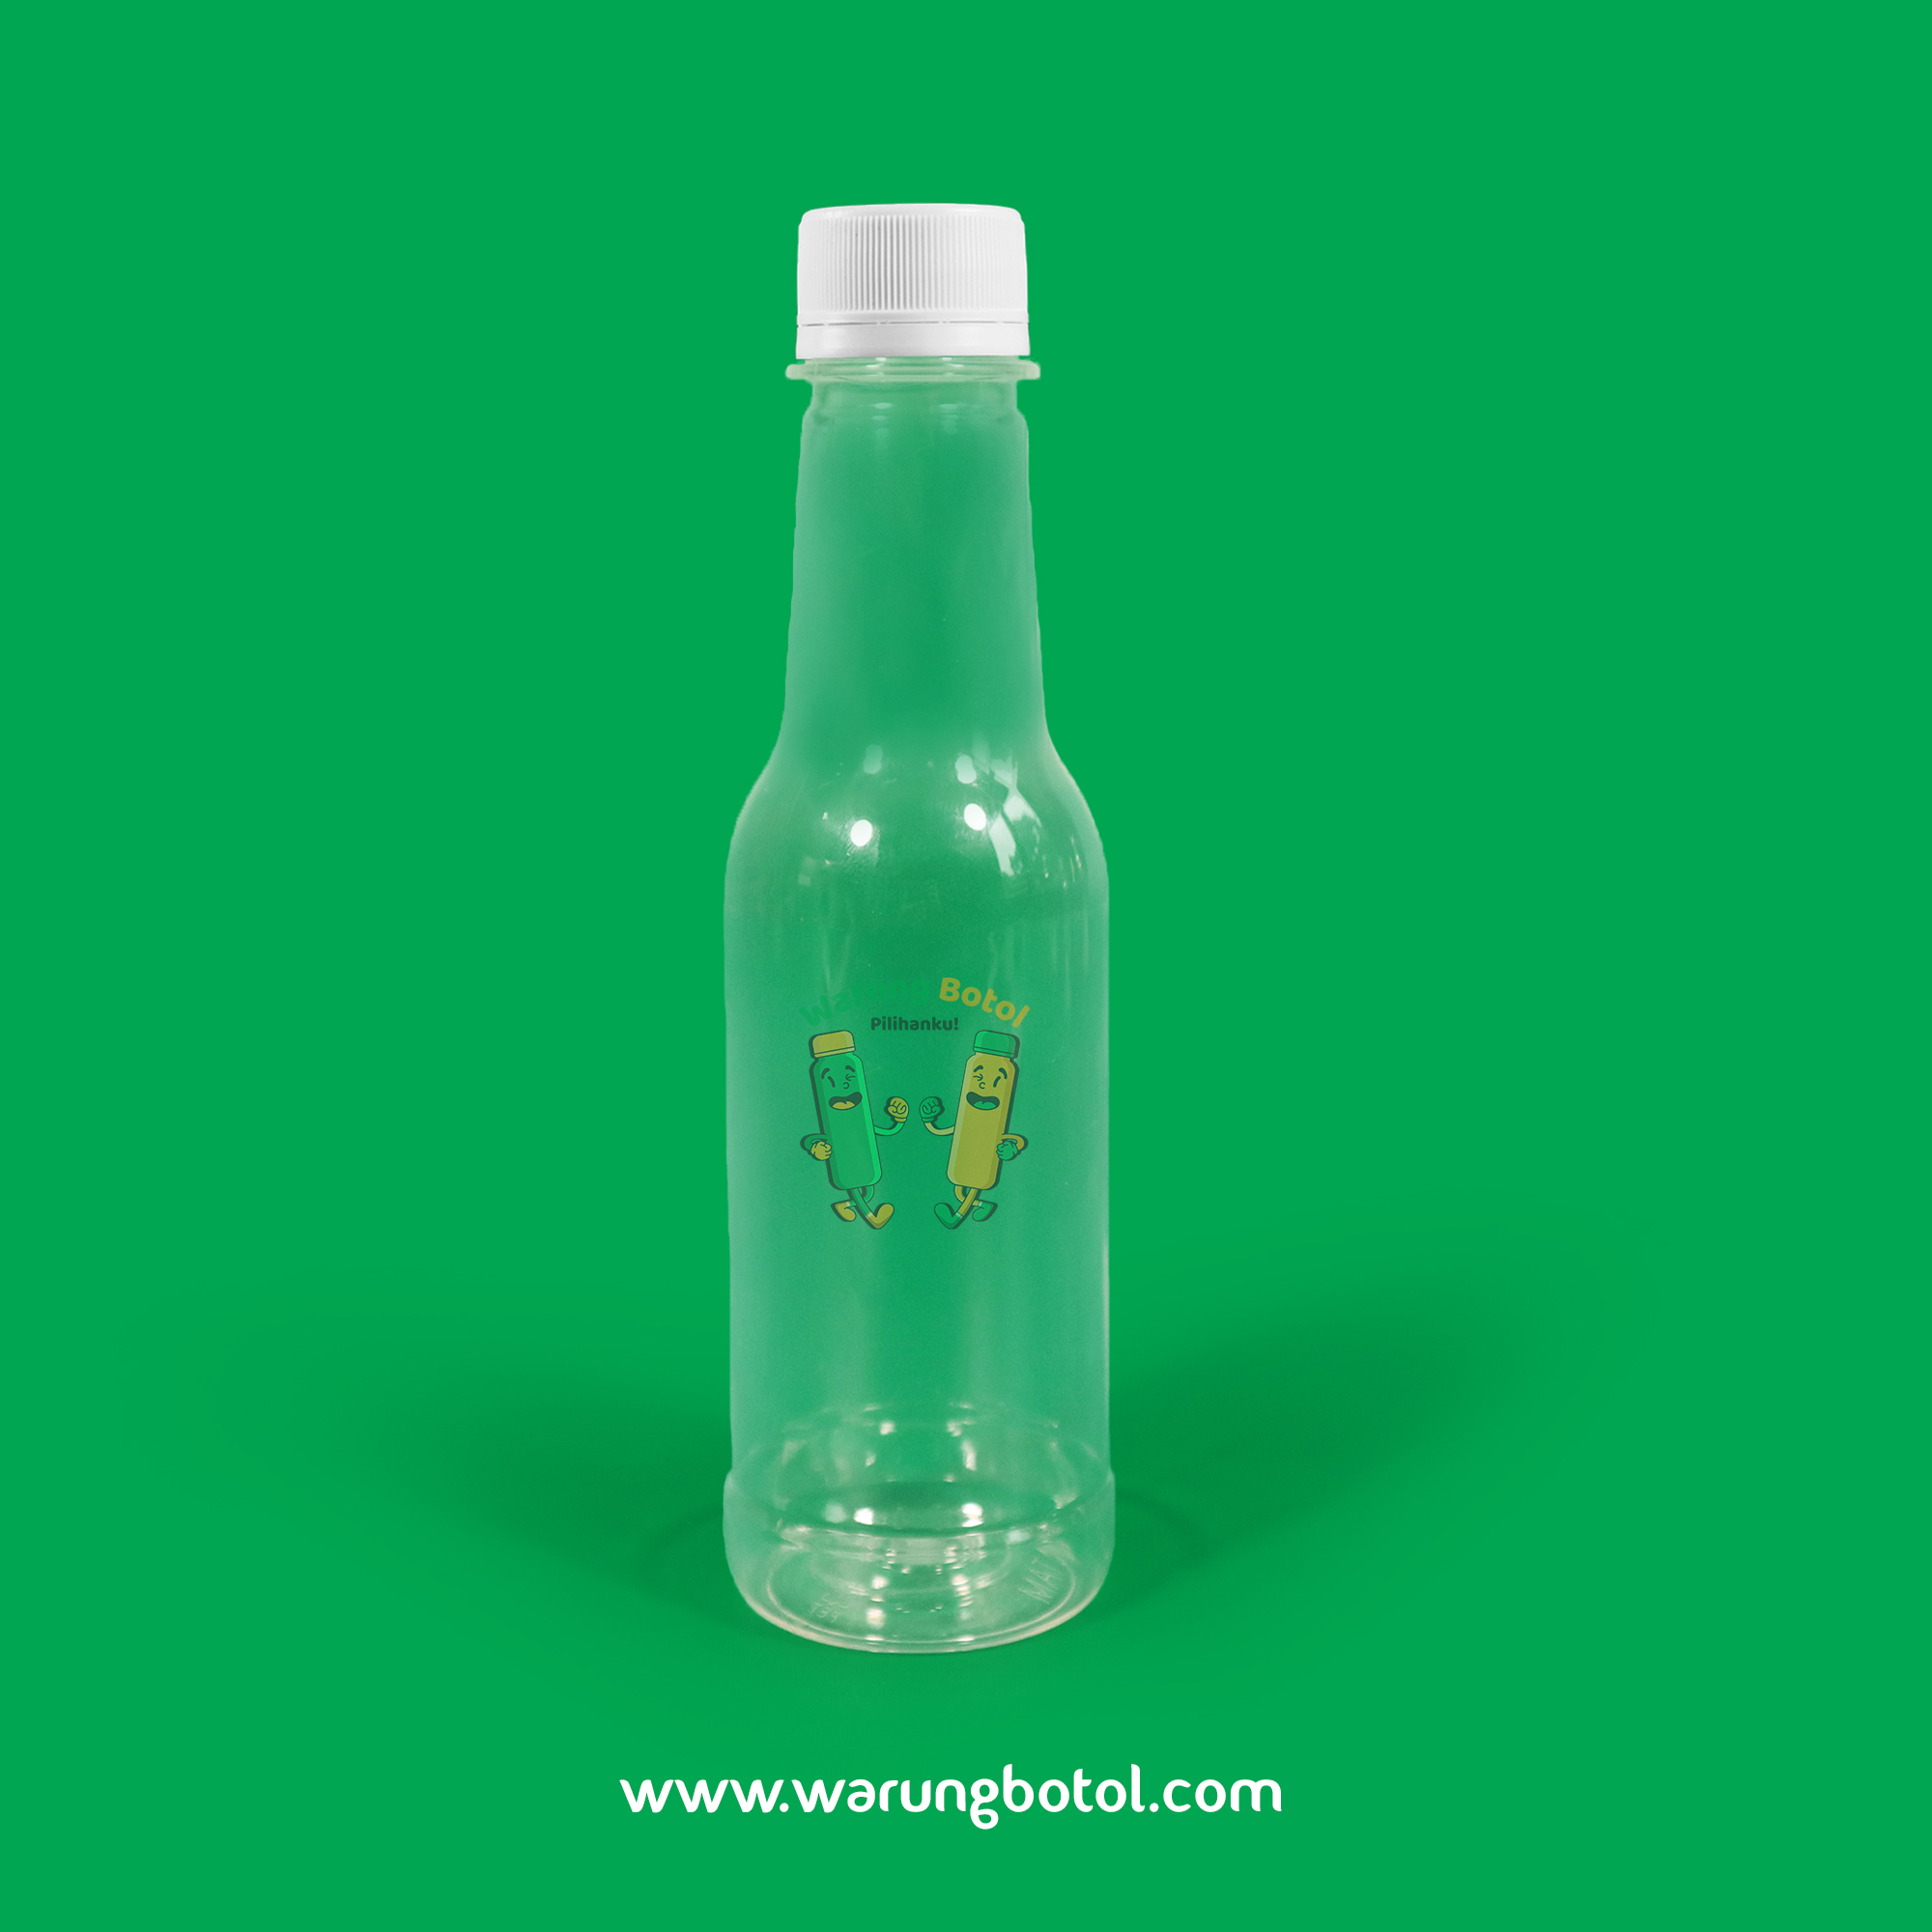 distributor toko jual botol plastik minuman unik 250ml bening murah terdekat di bandung, jakarta, bogor dan bekasi